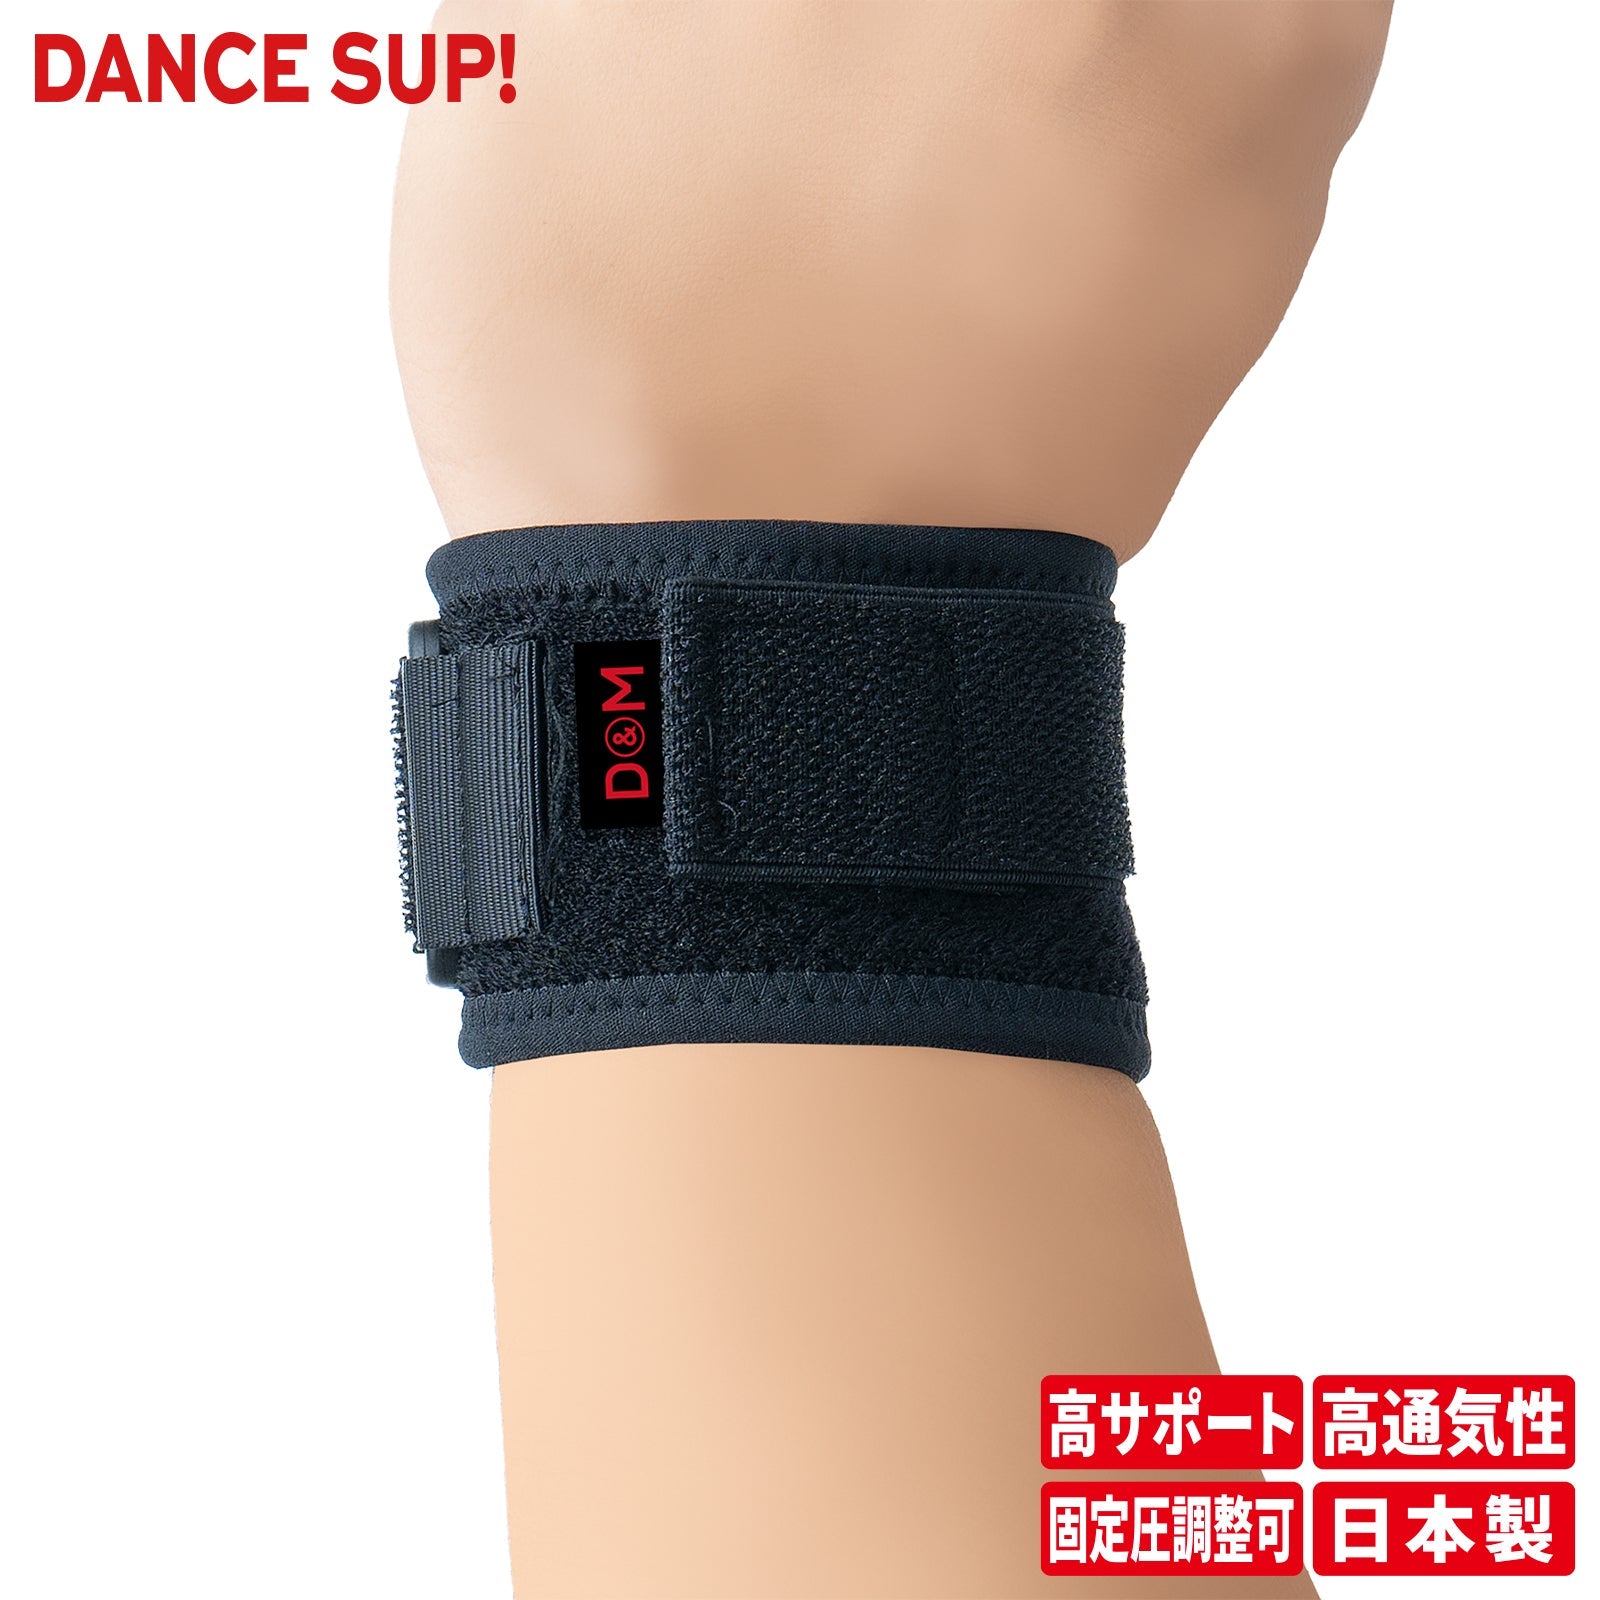 【DANCE SUP!】手首サポーター ダンス用 ダンスサップ 黒 ブラック 左右兼用 フリーサイズ 1個入 日本製 #SUP-22